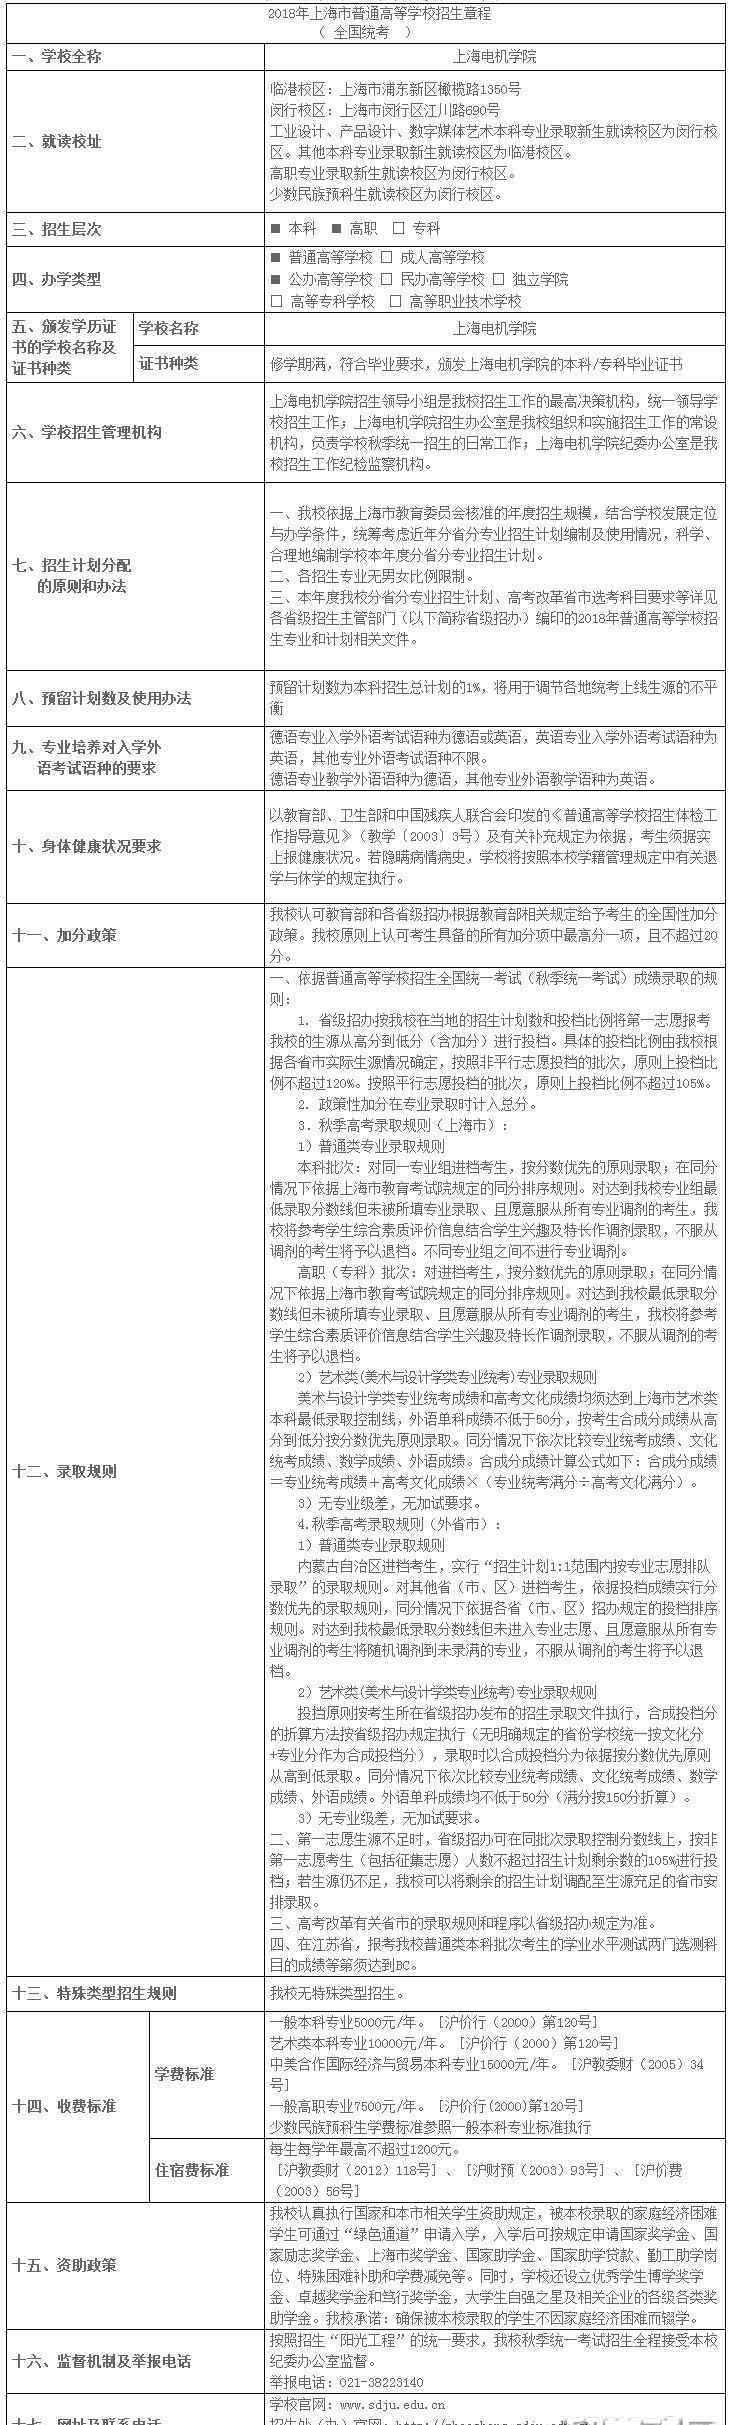 上海电机学院招生网 上海电机学院2018招生章程